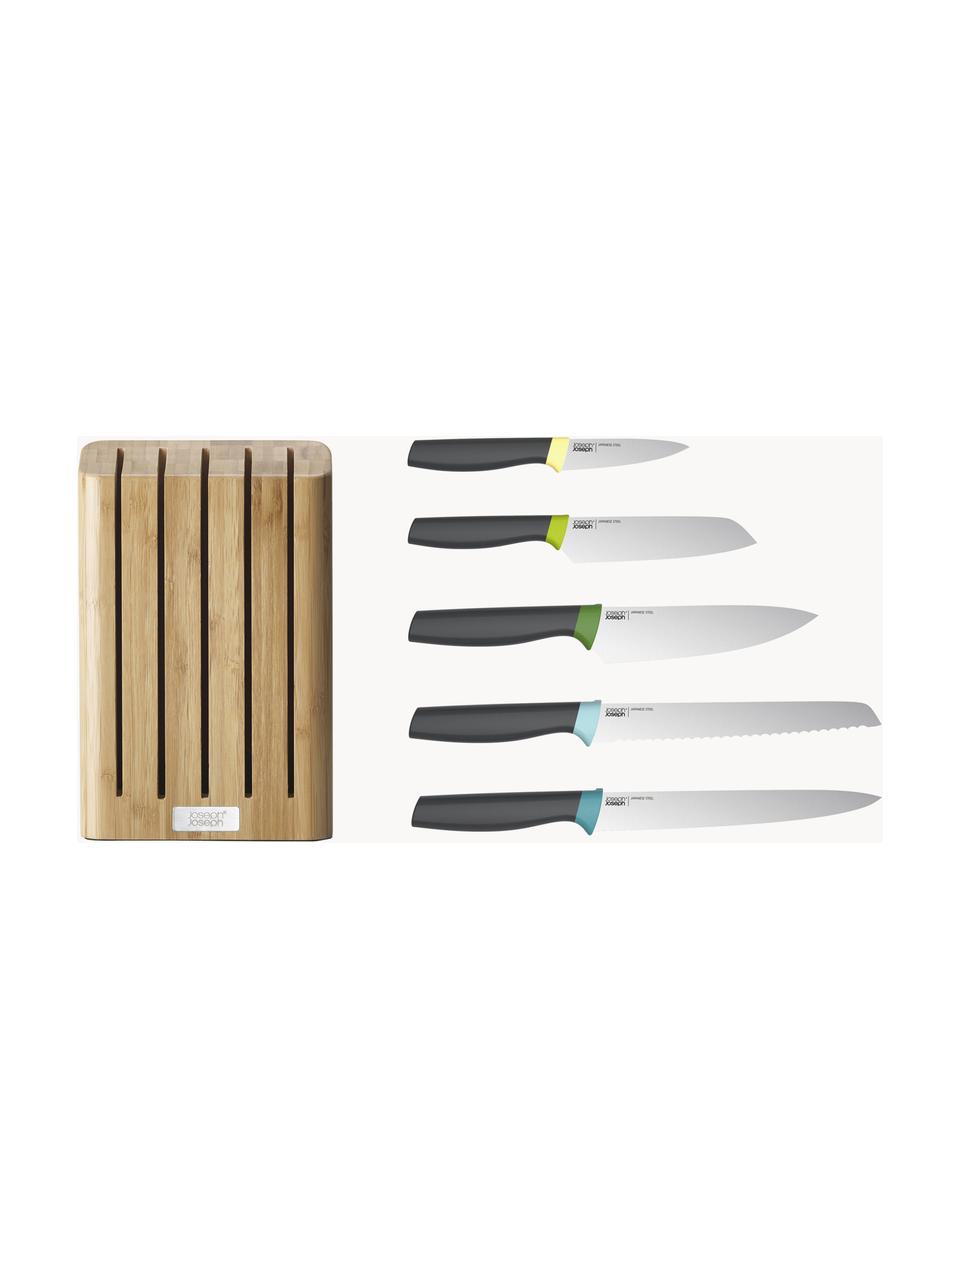 Messerblock Elevate Slim mit 5 Messern, Messer: Edelstahl, Griff: Polypropylen, Thermoplast, Beige, Schwarz, Verschiedene Grössen